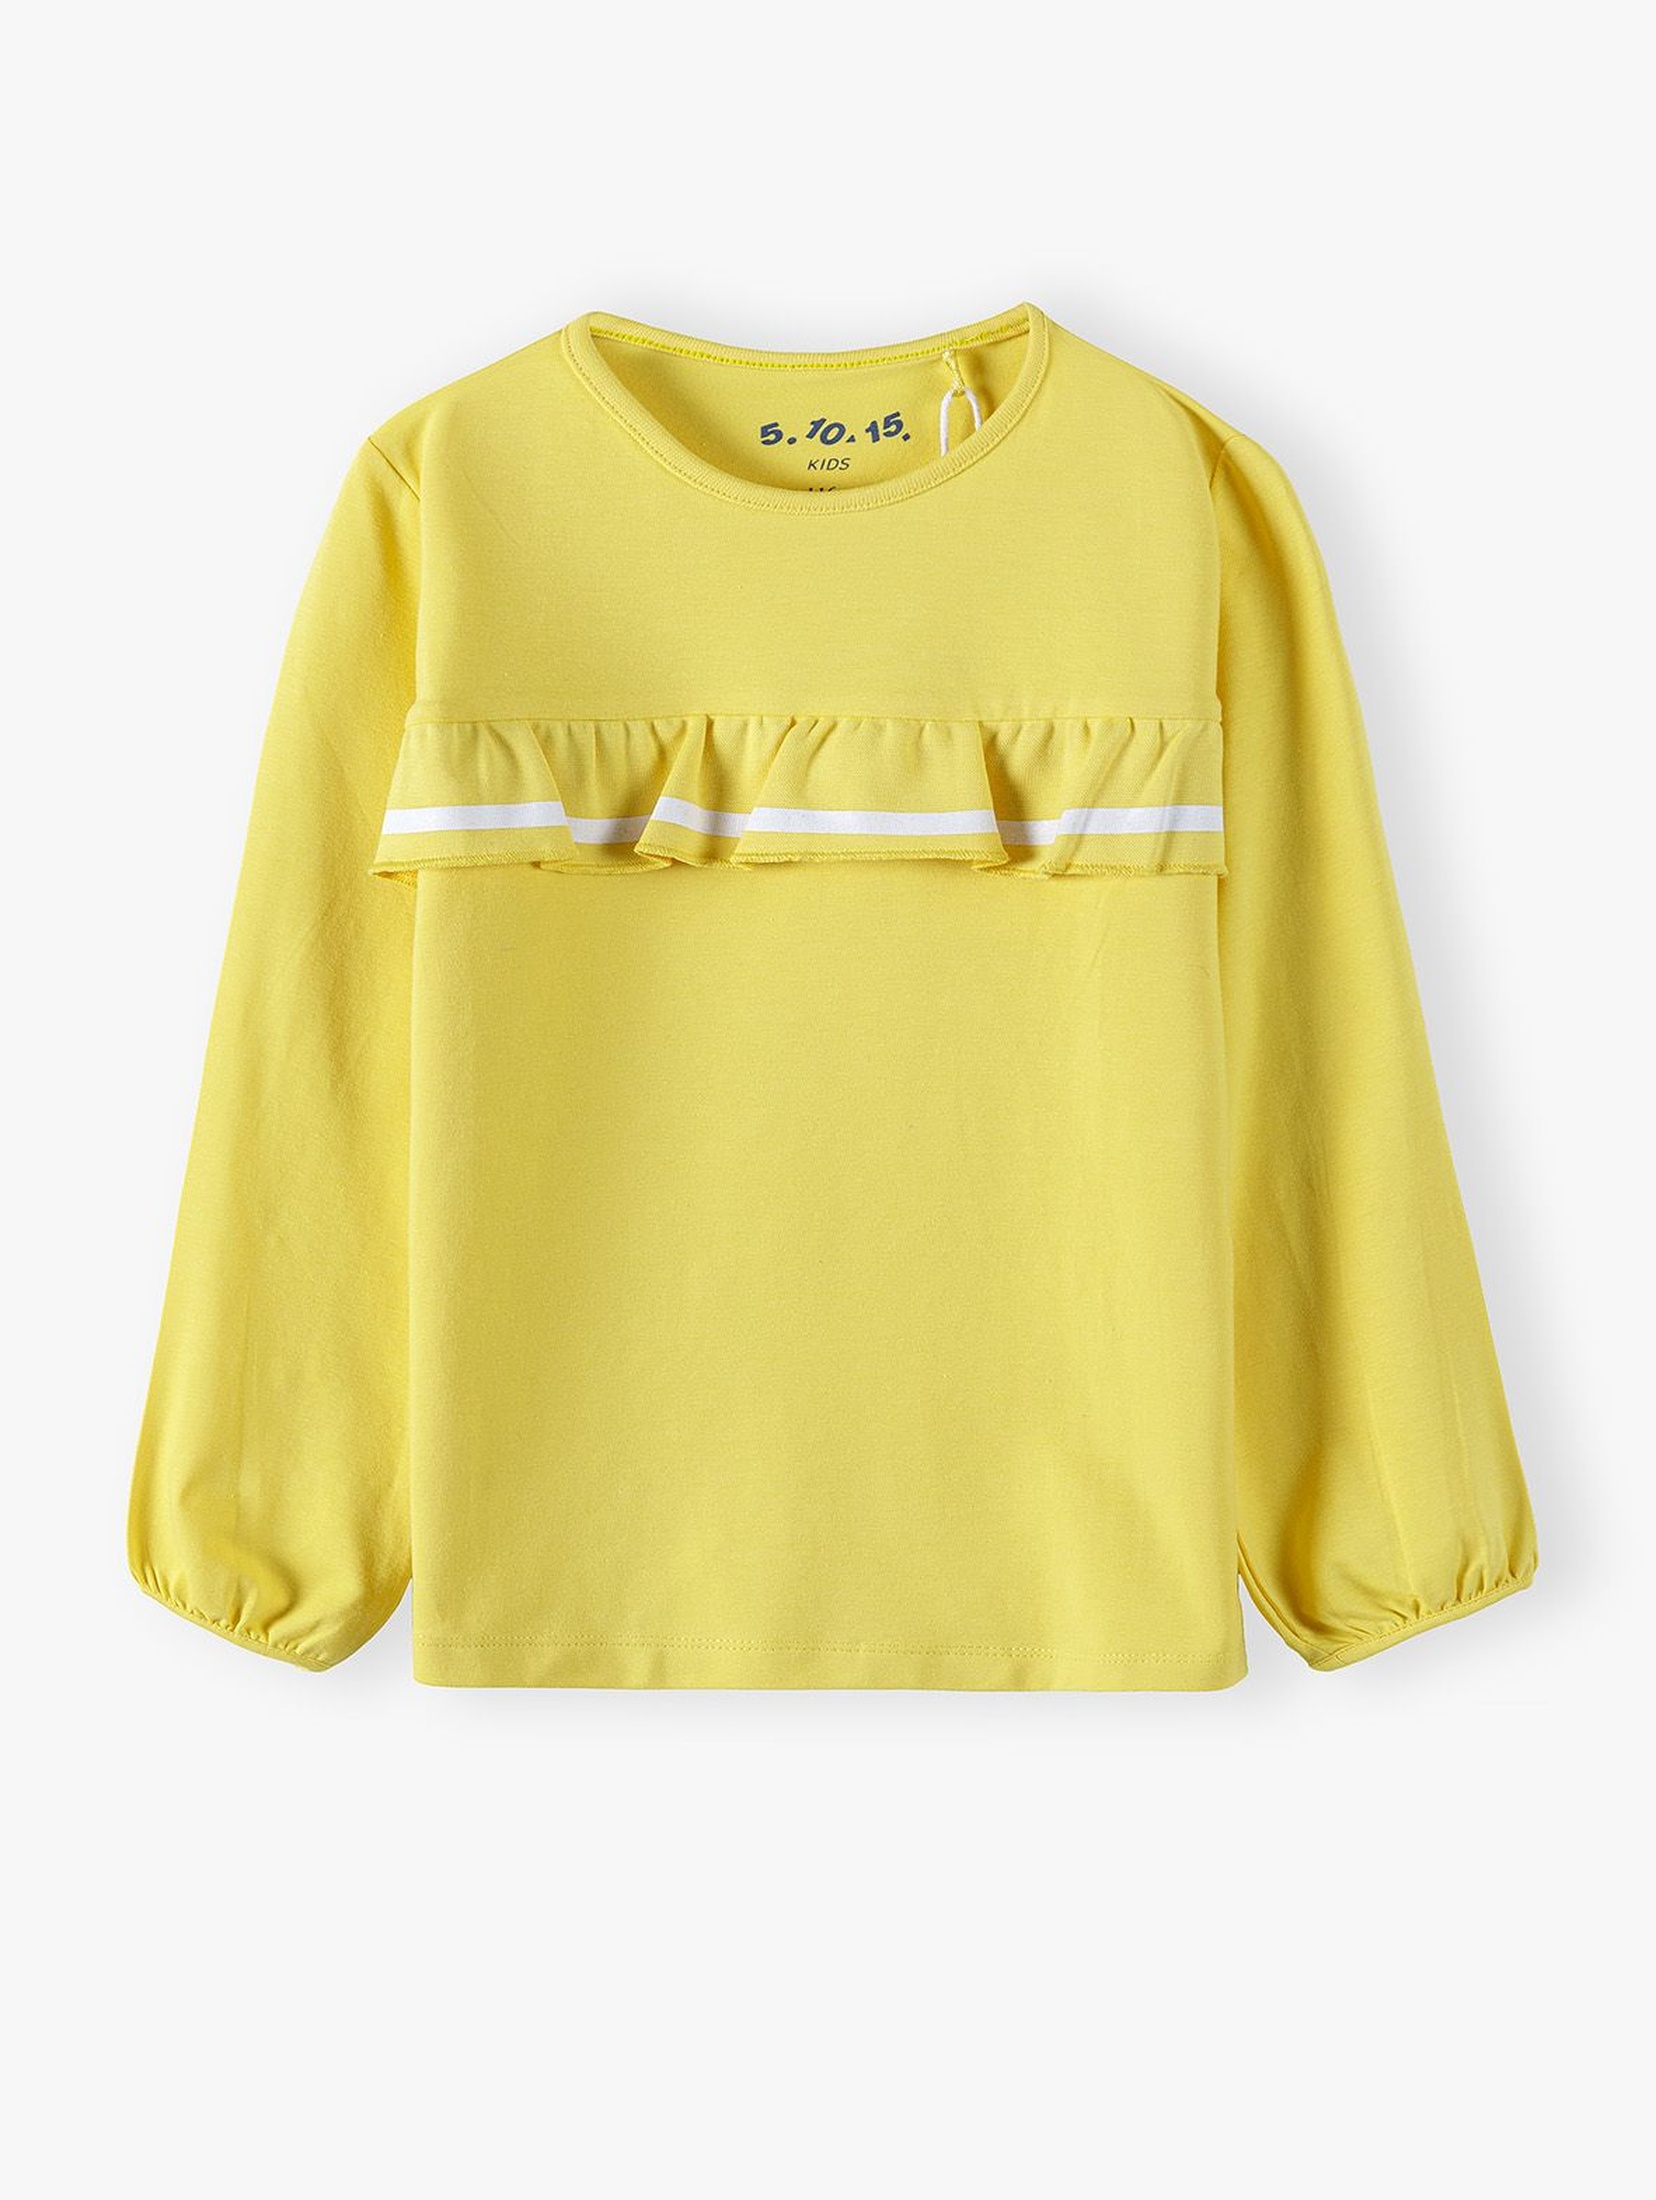 Żółta bluzka dziewczęca z ozdobną falbanką